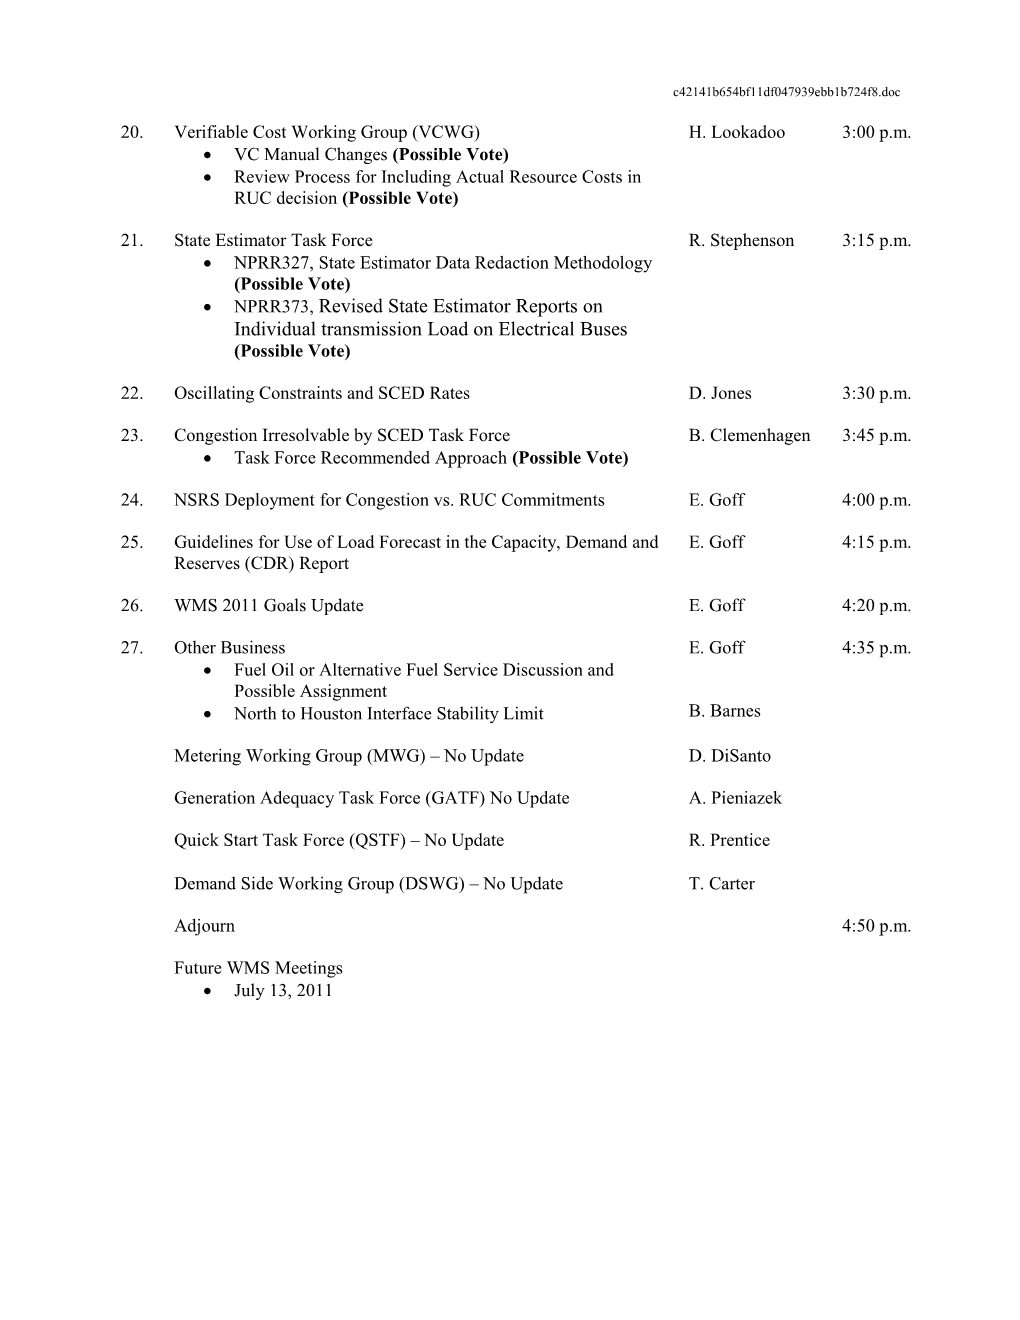 TPTF Draft Agenda: January 12 13, 2009